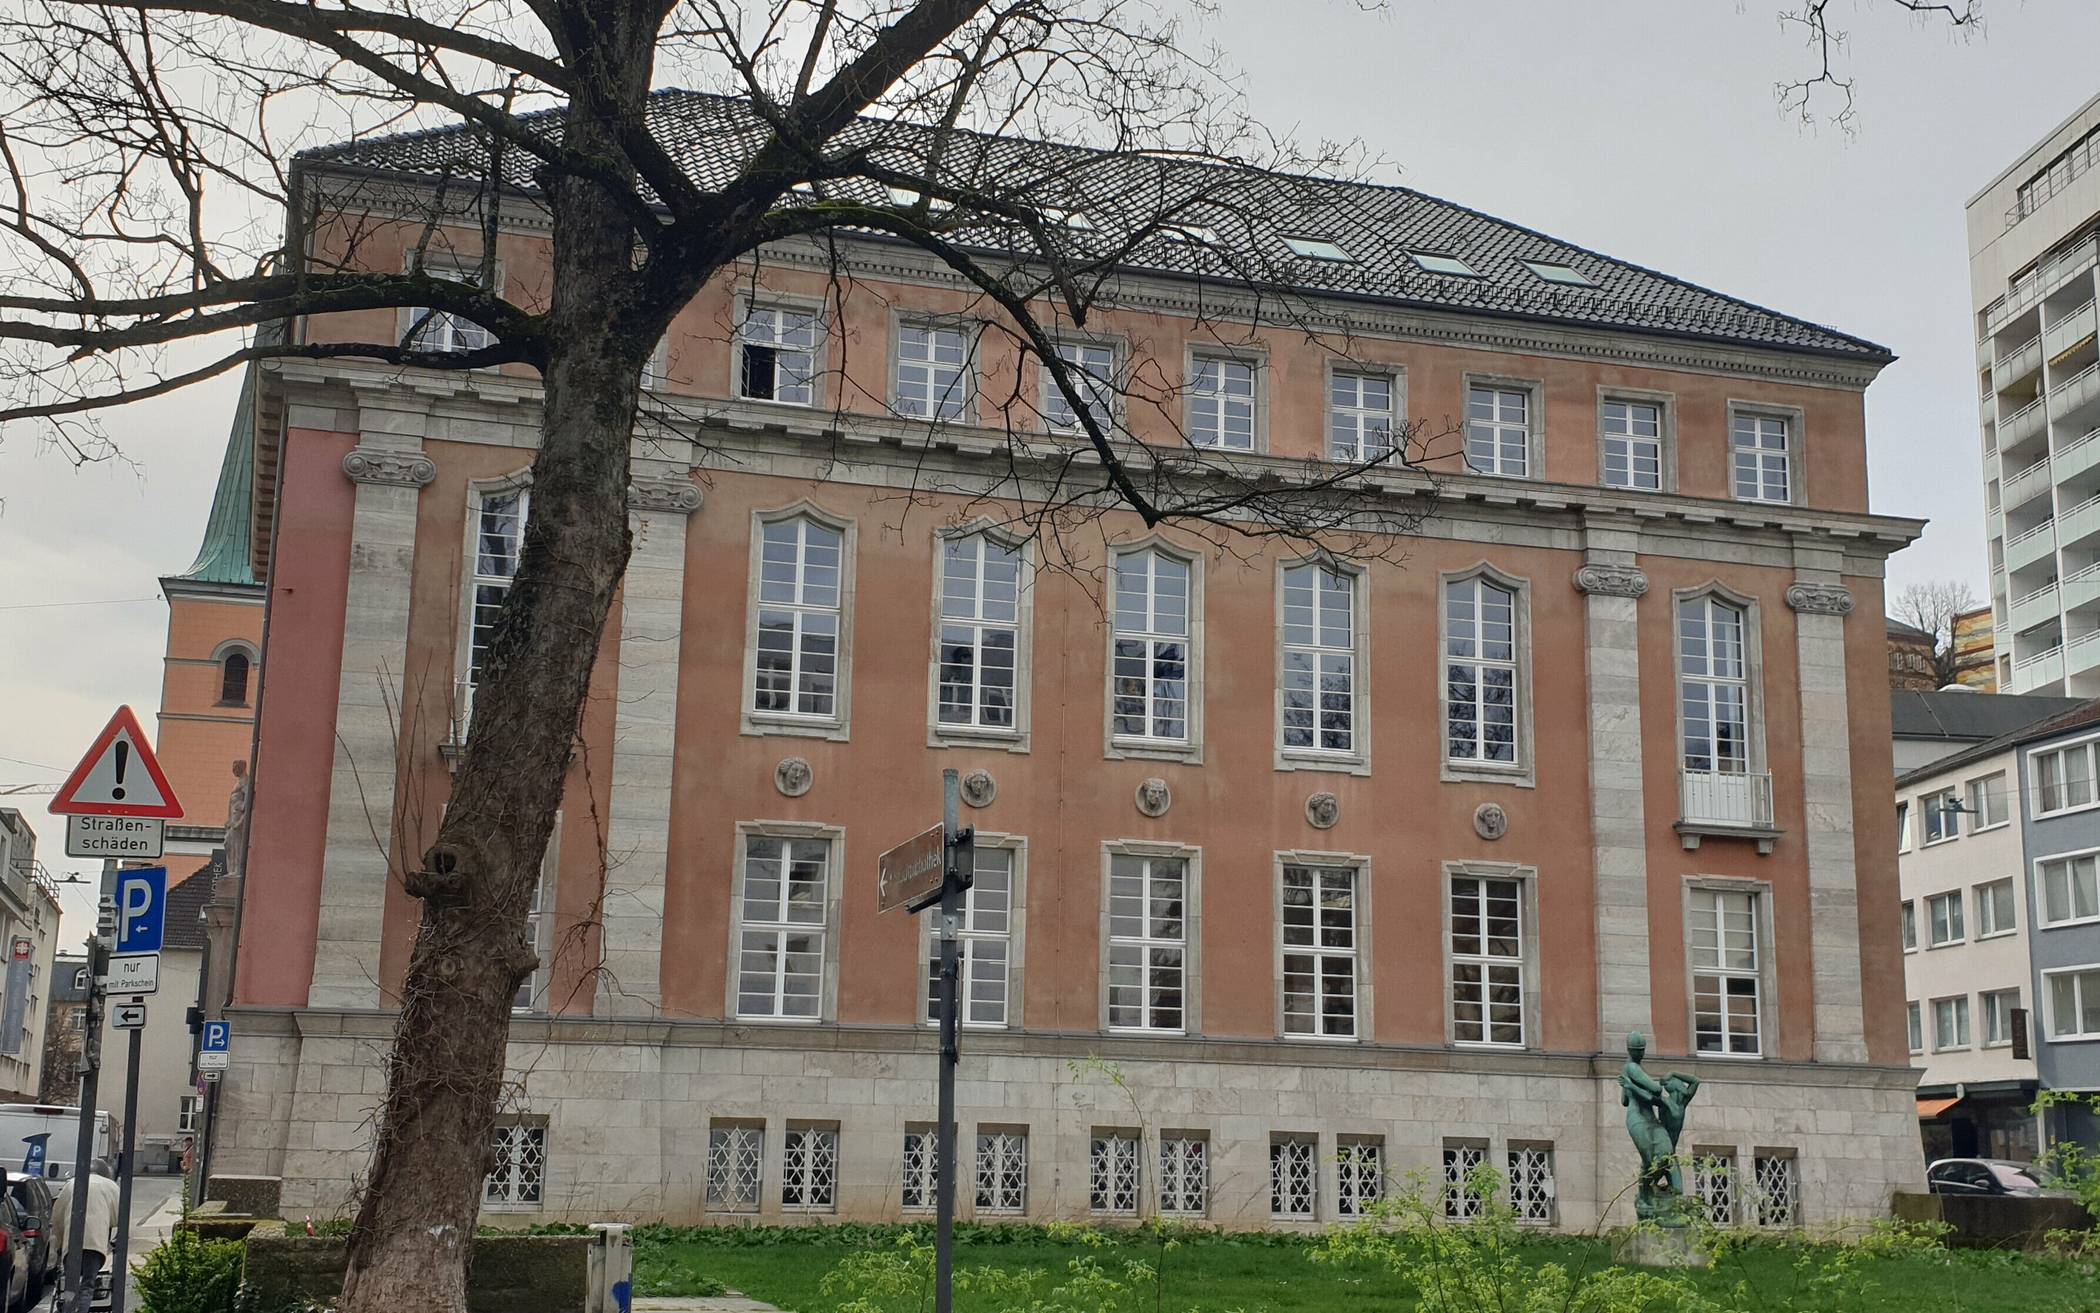  Das historische Gebäude der Stadtbibliothek an der Kolpingstraße. Wenn die Bibliothek hier auszieht, könnte die Immobilie der neue Standort für das Stadtarchiv sein. Für diese Nutzung gilt das Haus unter Experten als ideal.  